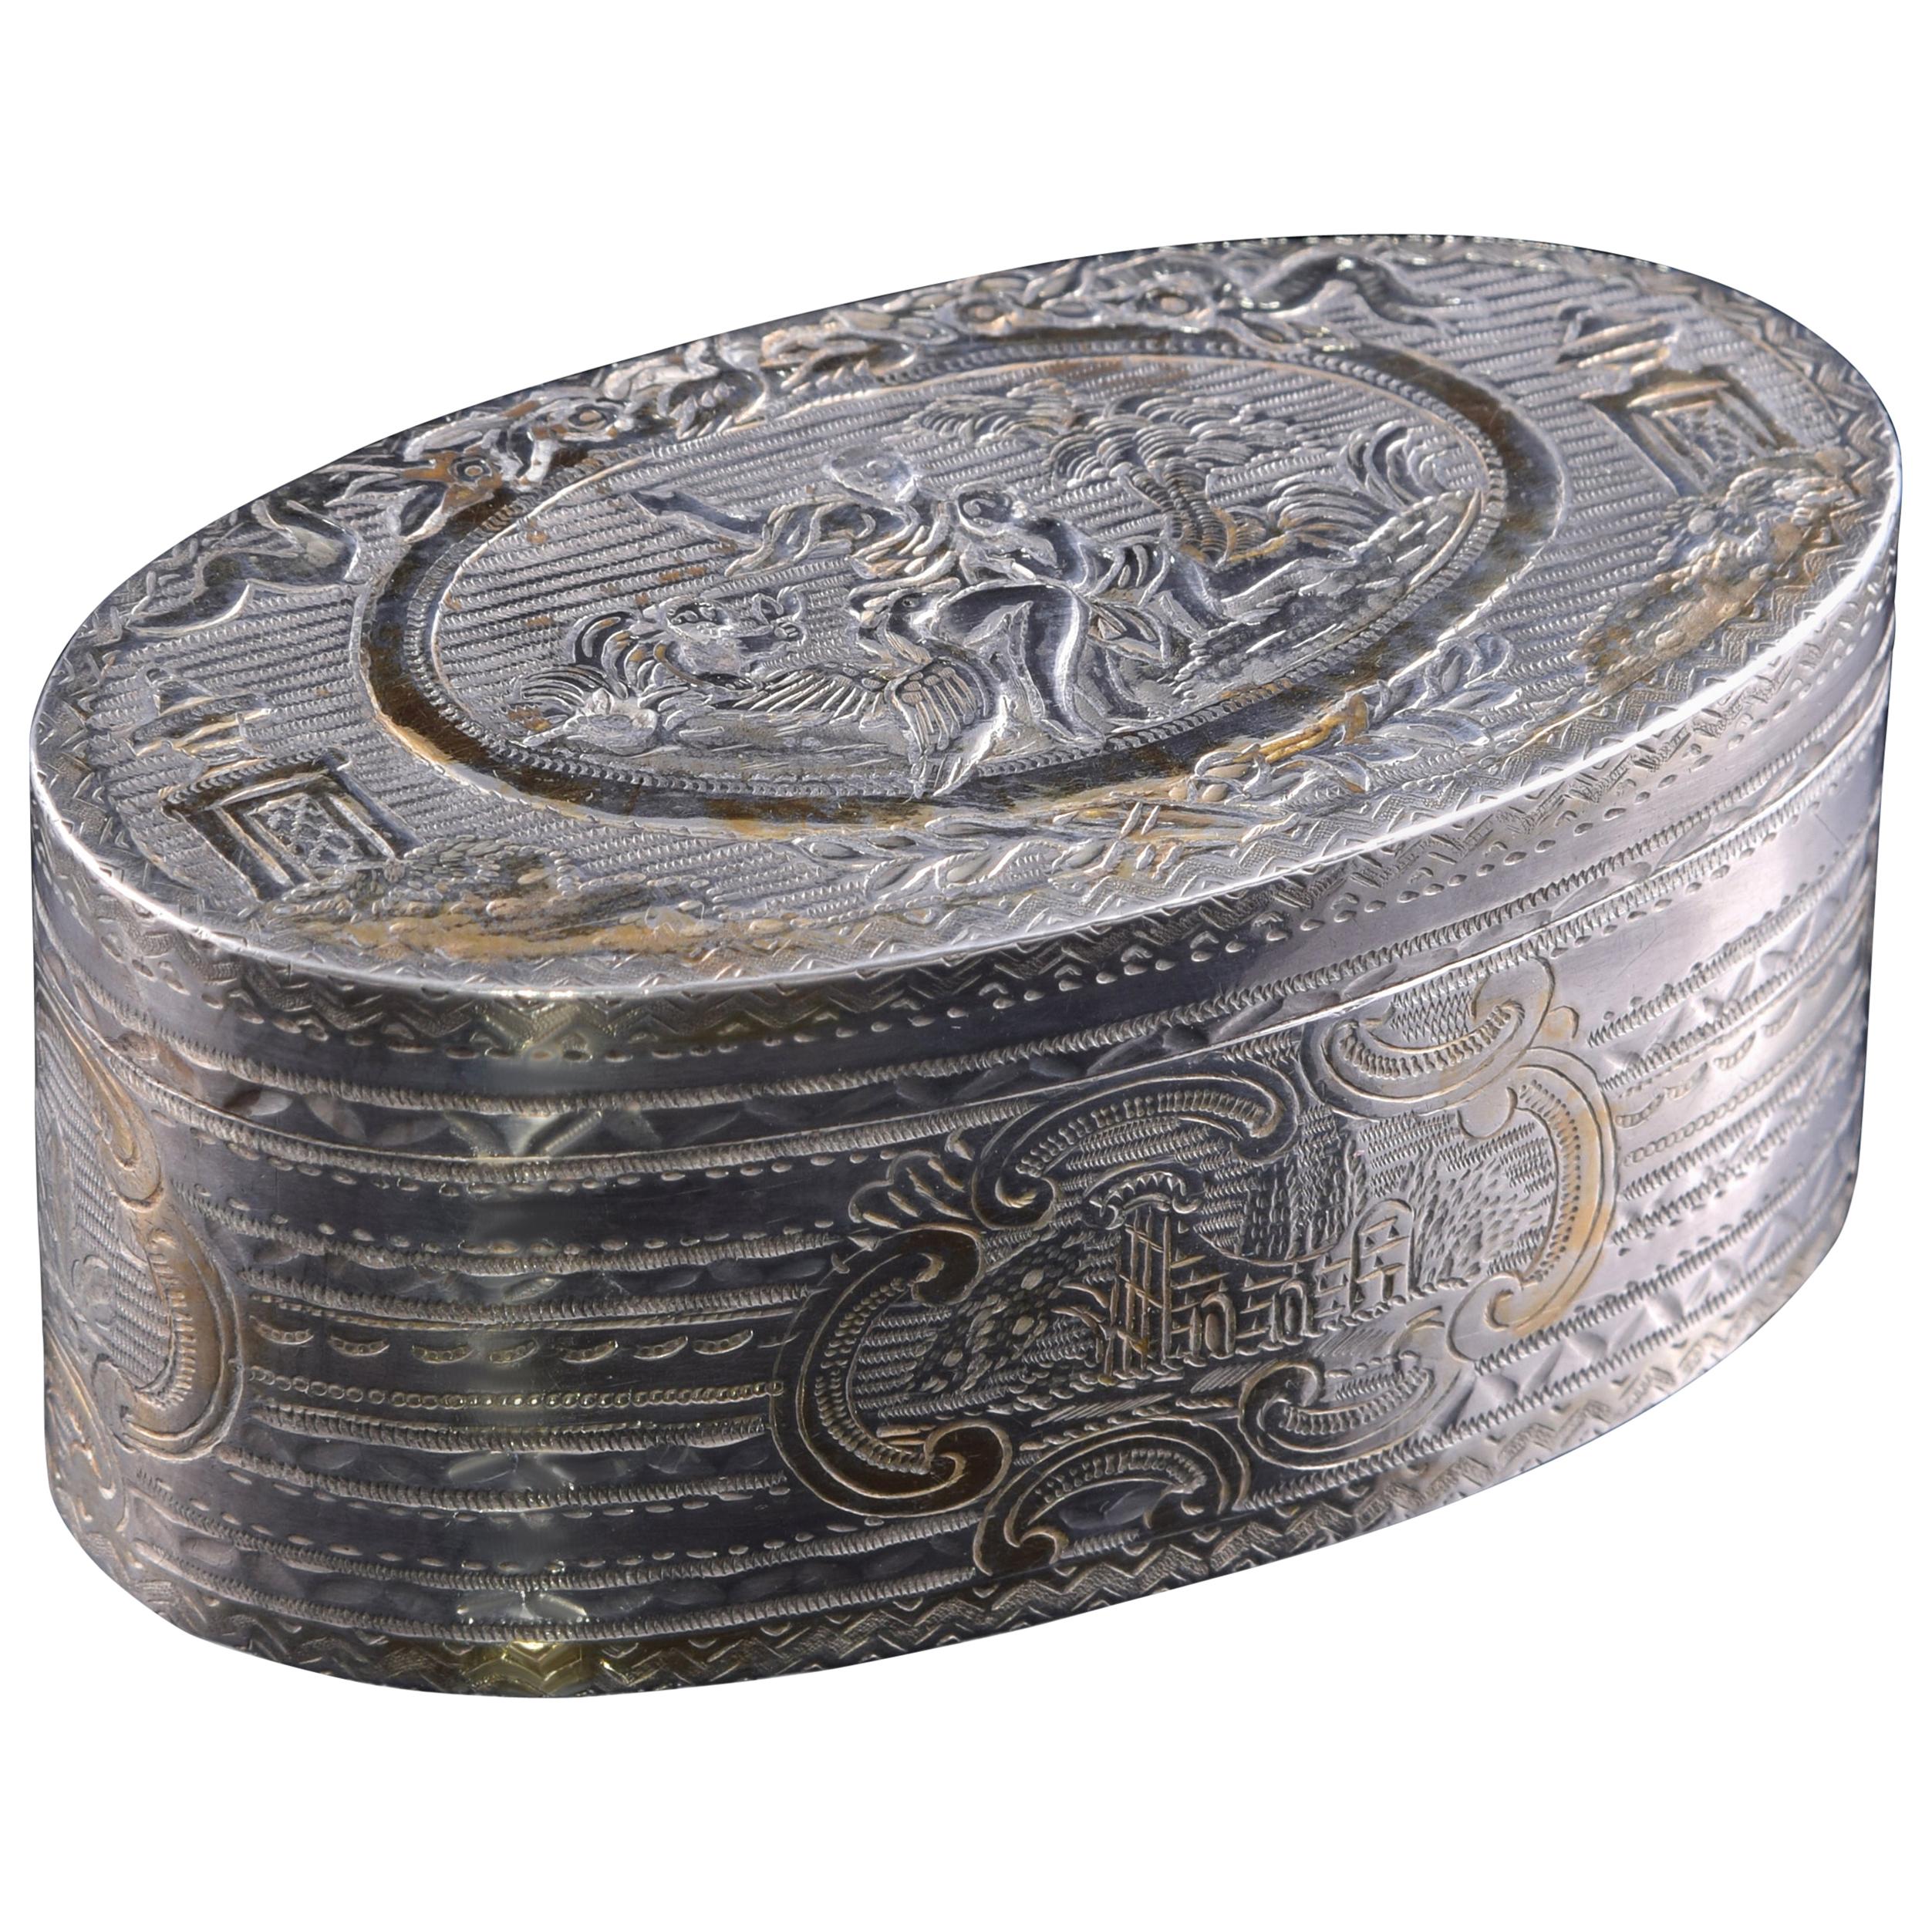 Boîte ovale en argent, 19ème siècle, avec poinçons